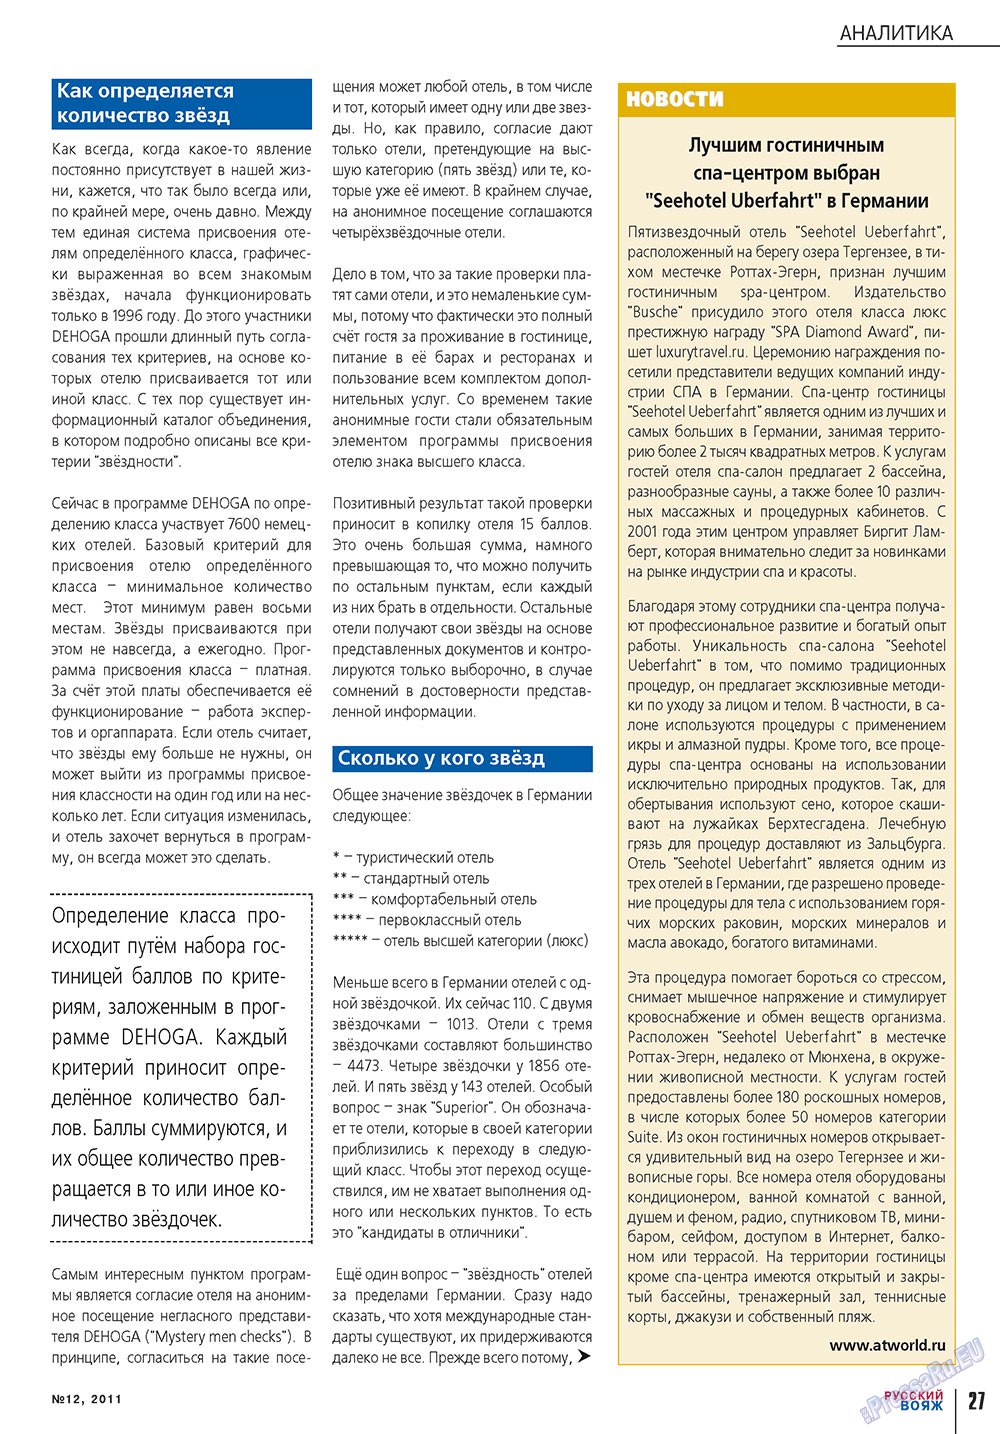 Русский вояж, журнал. 2011 №12 стр.27